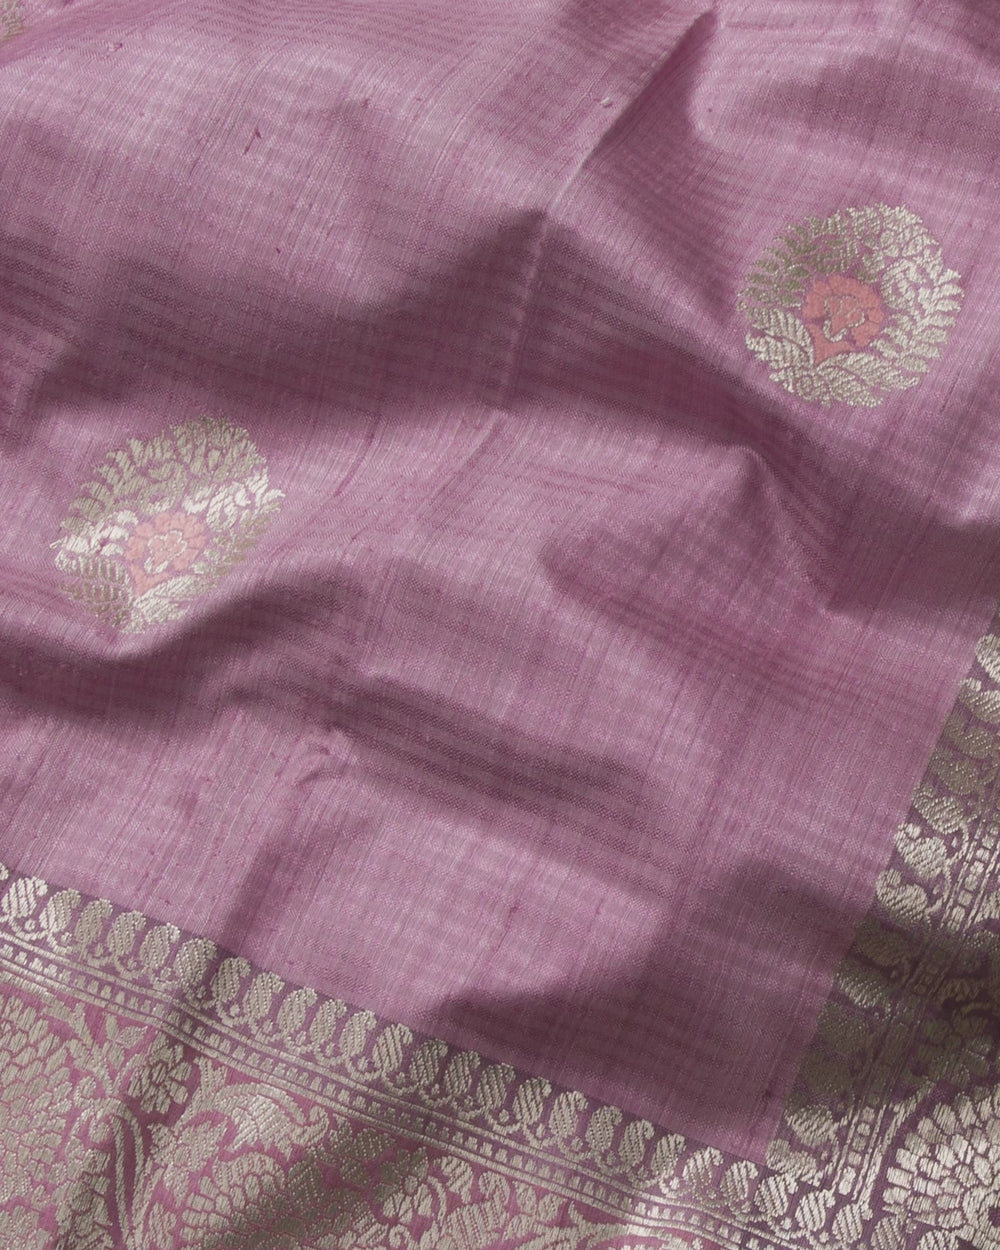 Rose Pink Handloom Banarasi Tussar Silk Saree - A52 - View 1